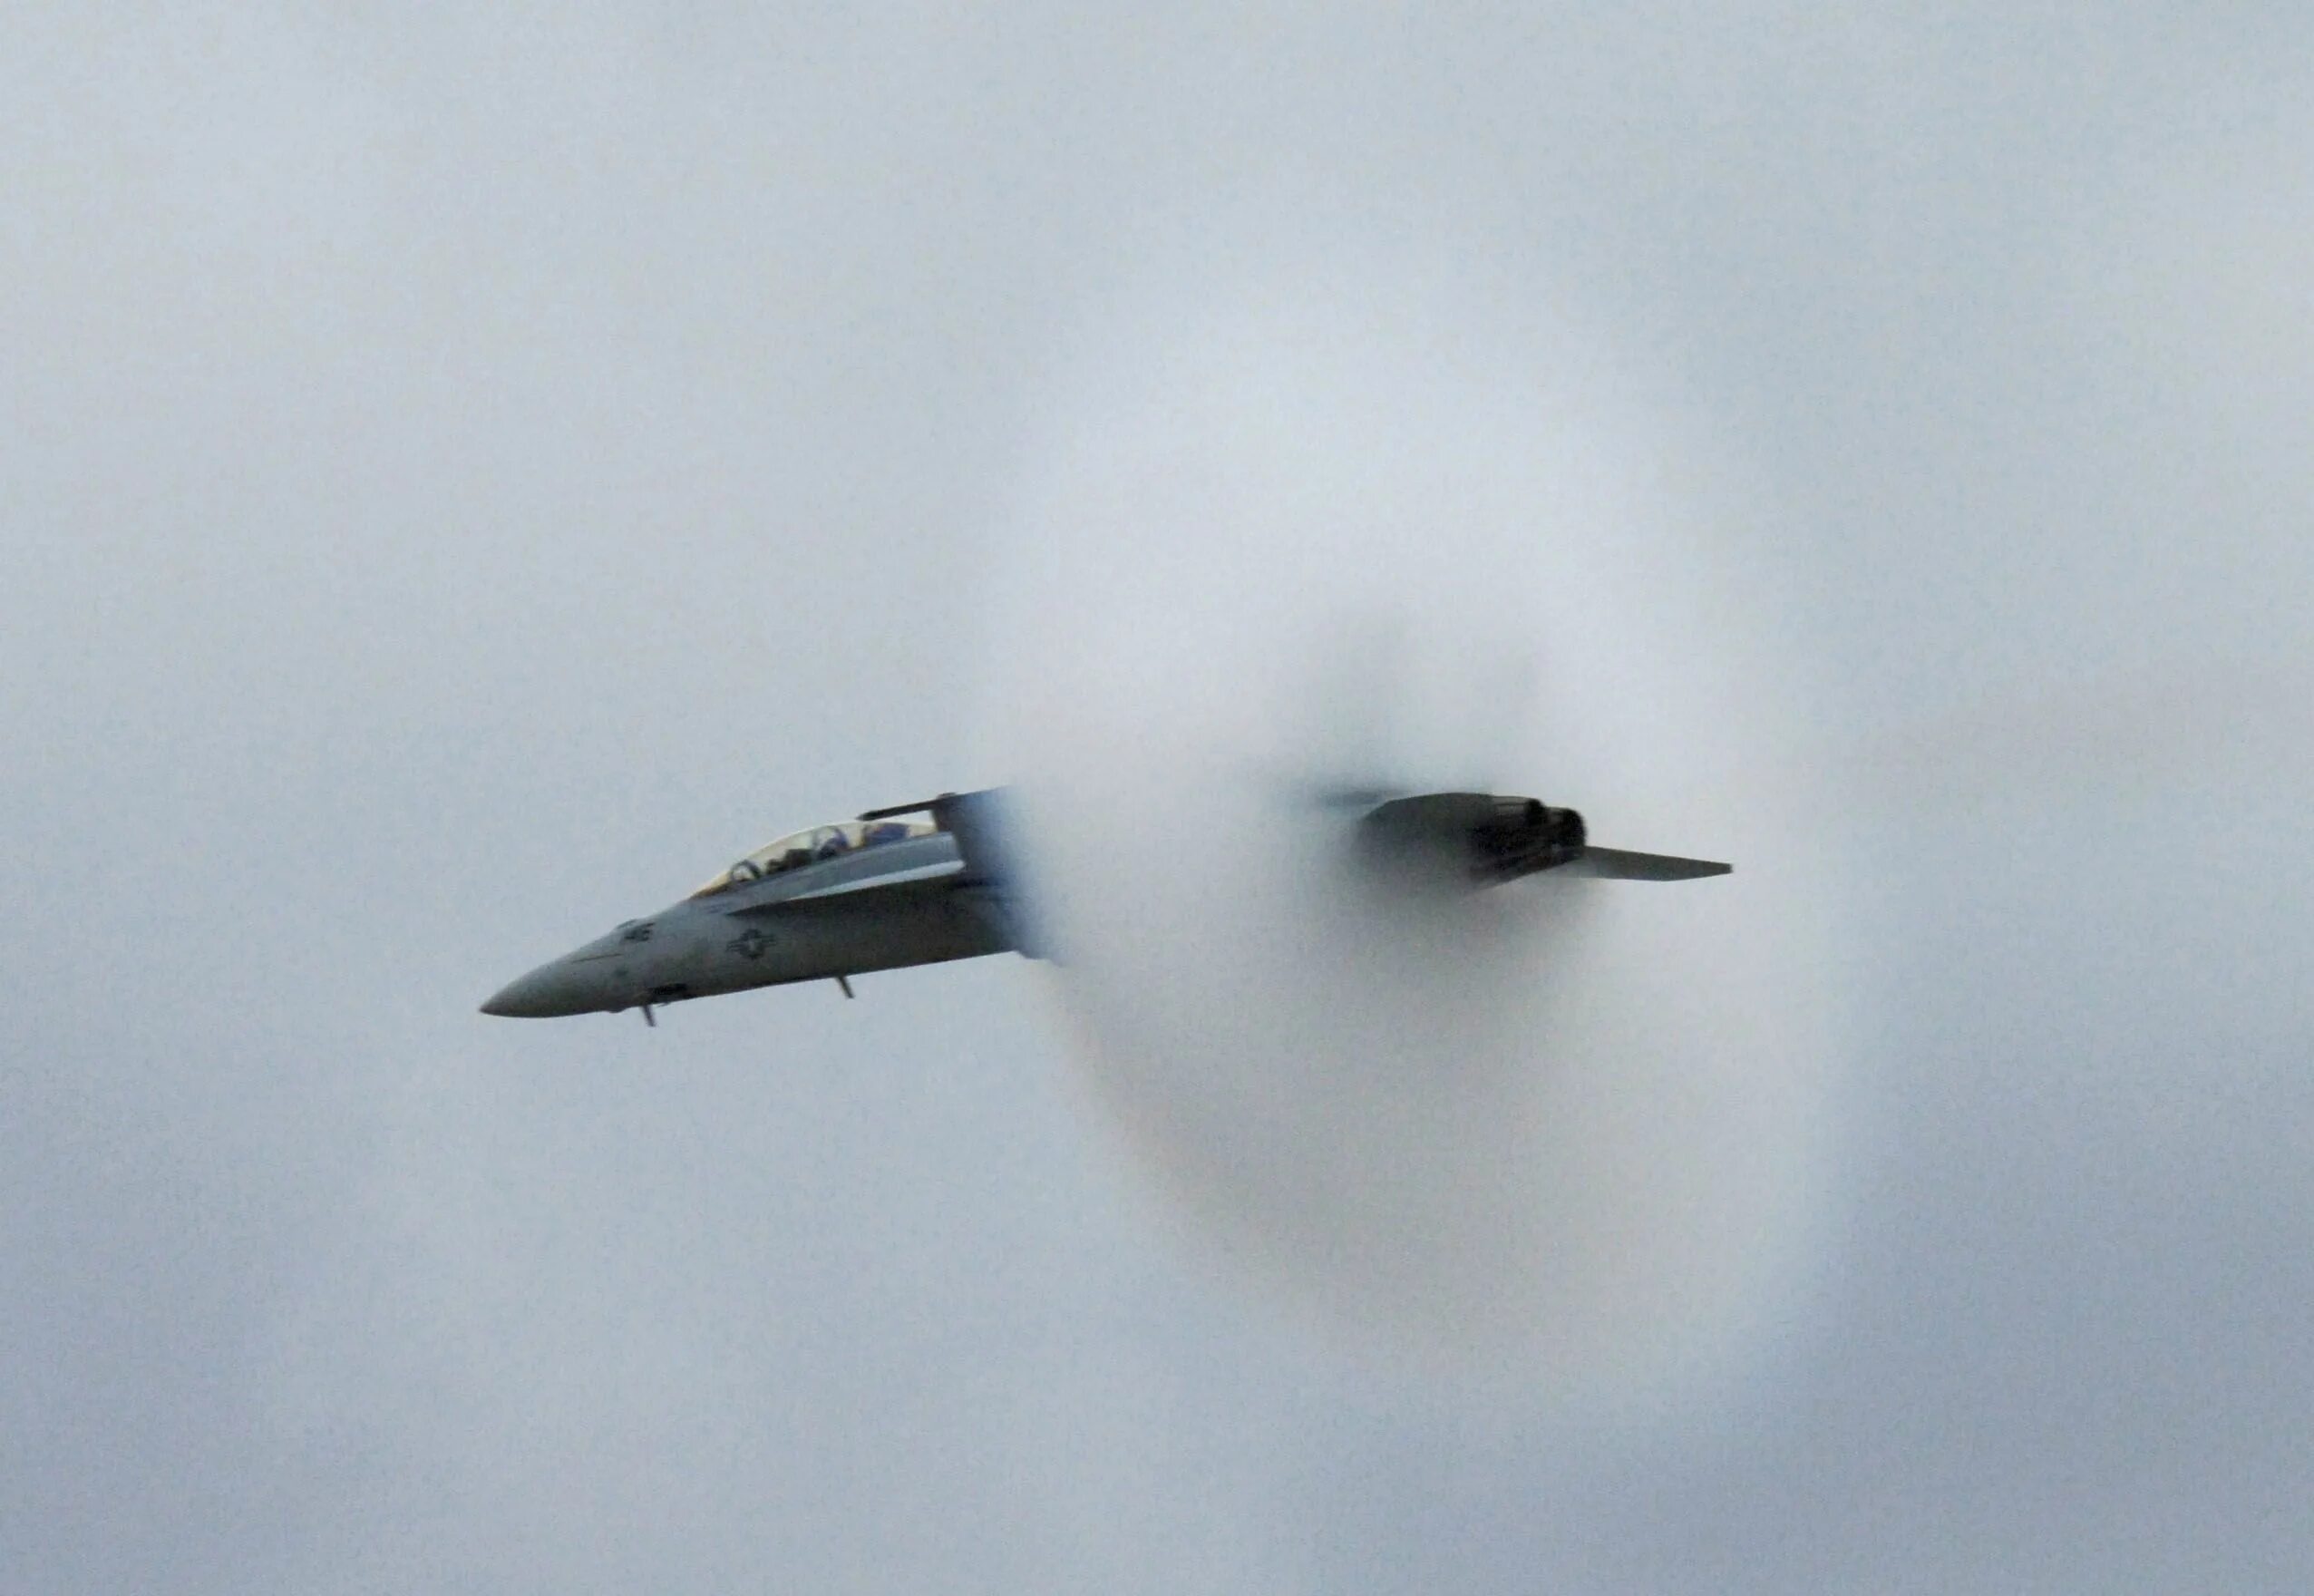 Скорость звука сверхзвукового самолета. Прандтля-Глоерта. Сверхзвуковая аэродинамика. Эффект Прандтля Глоерта Су-57. F18 сверхзвук.